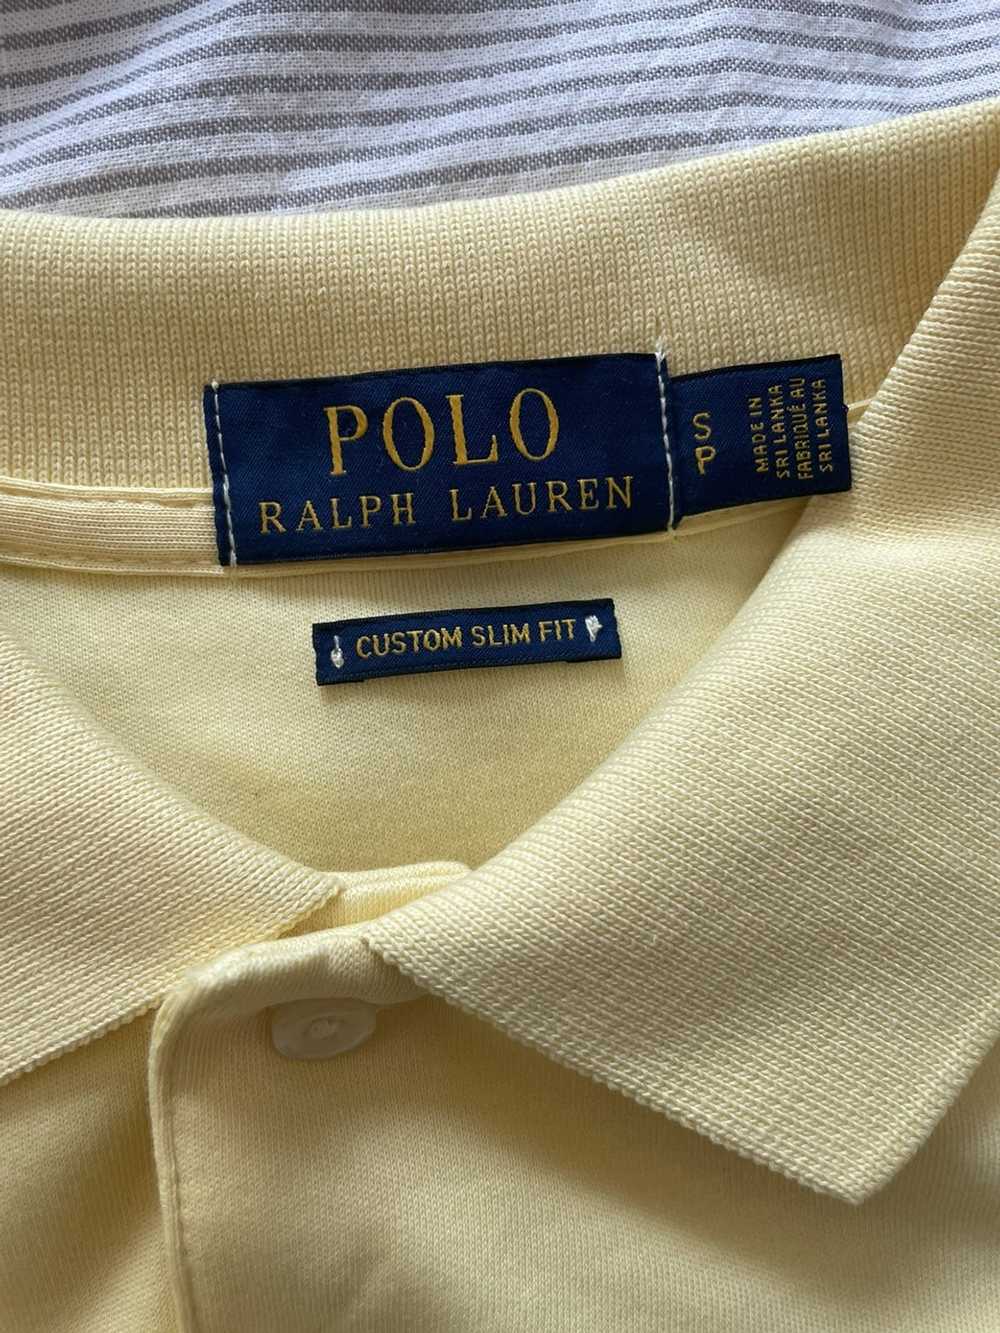 Polo Ralph Lauren × Ralph Lauren Ralph Lauren Polo - image 2